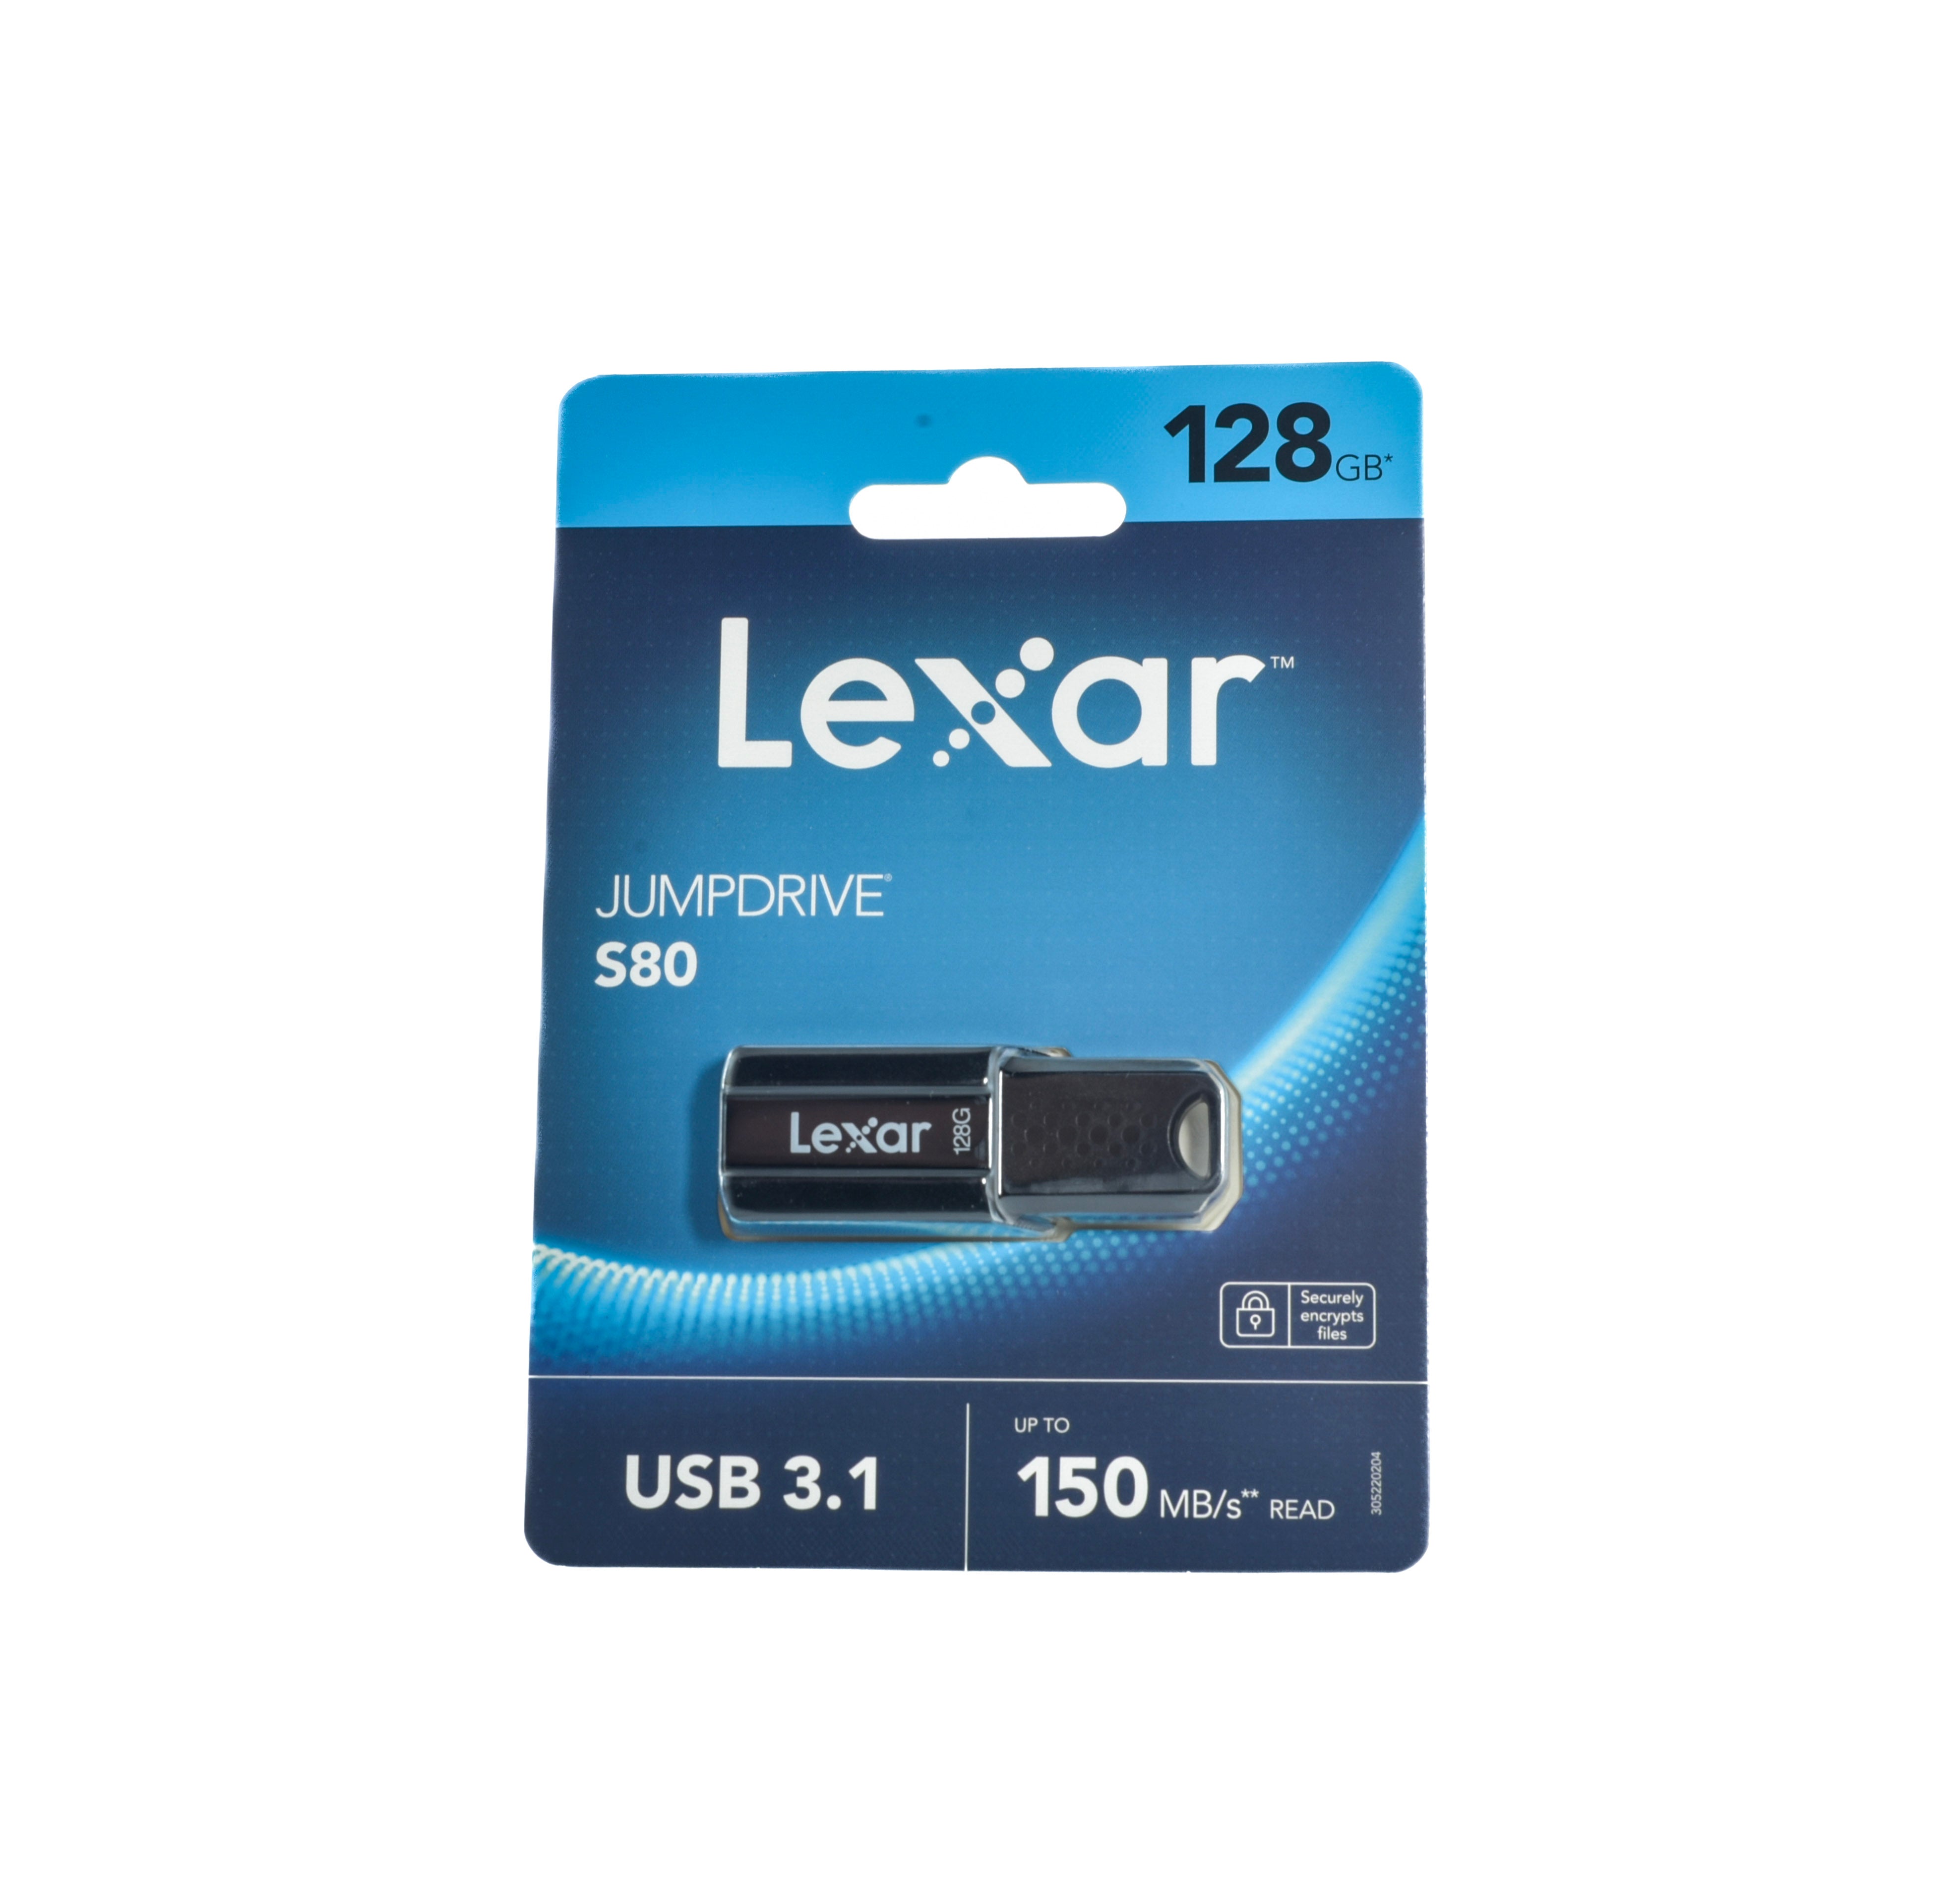 Lexar Jumpdrive S80 128 GB 3.1 Usb Stick